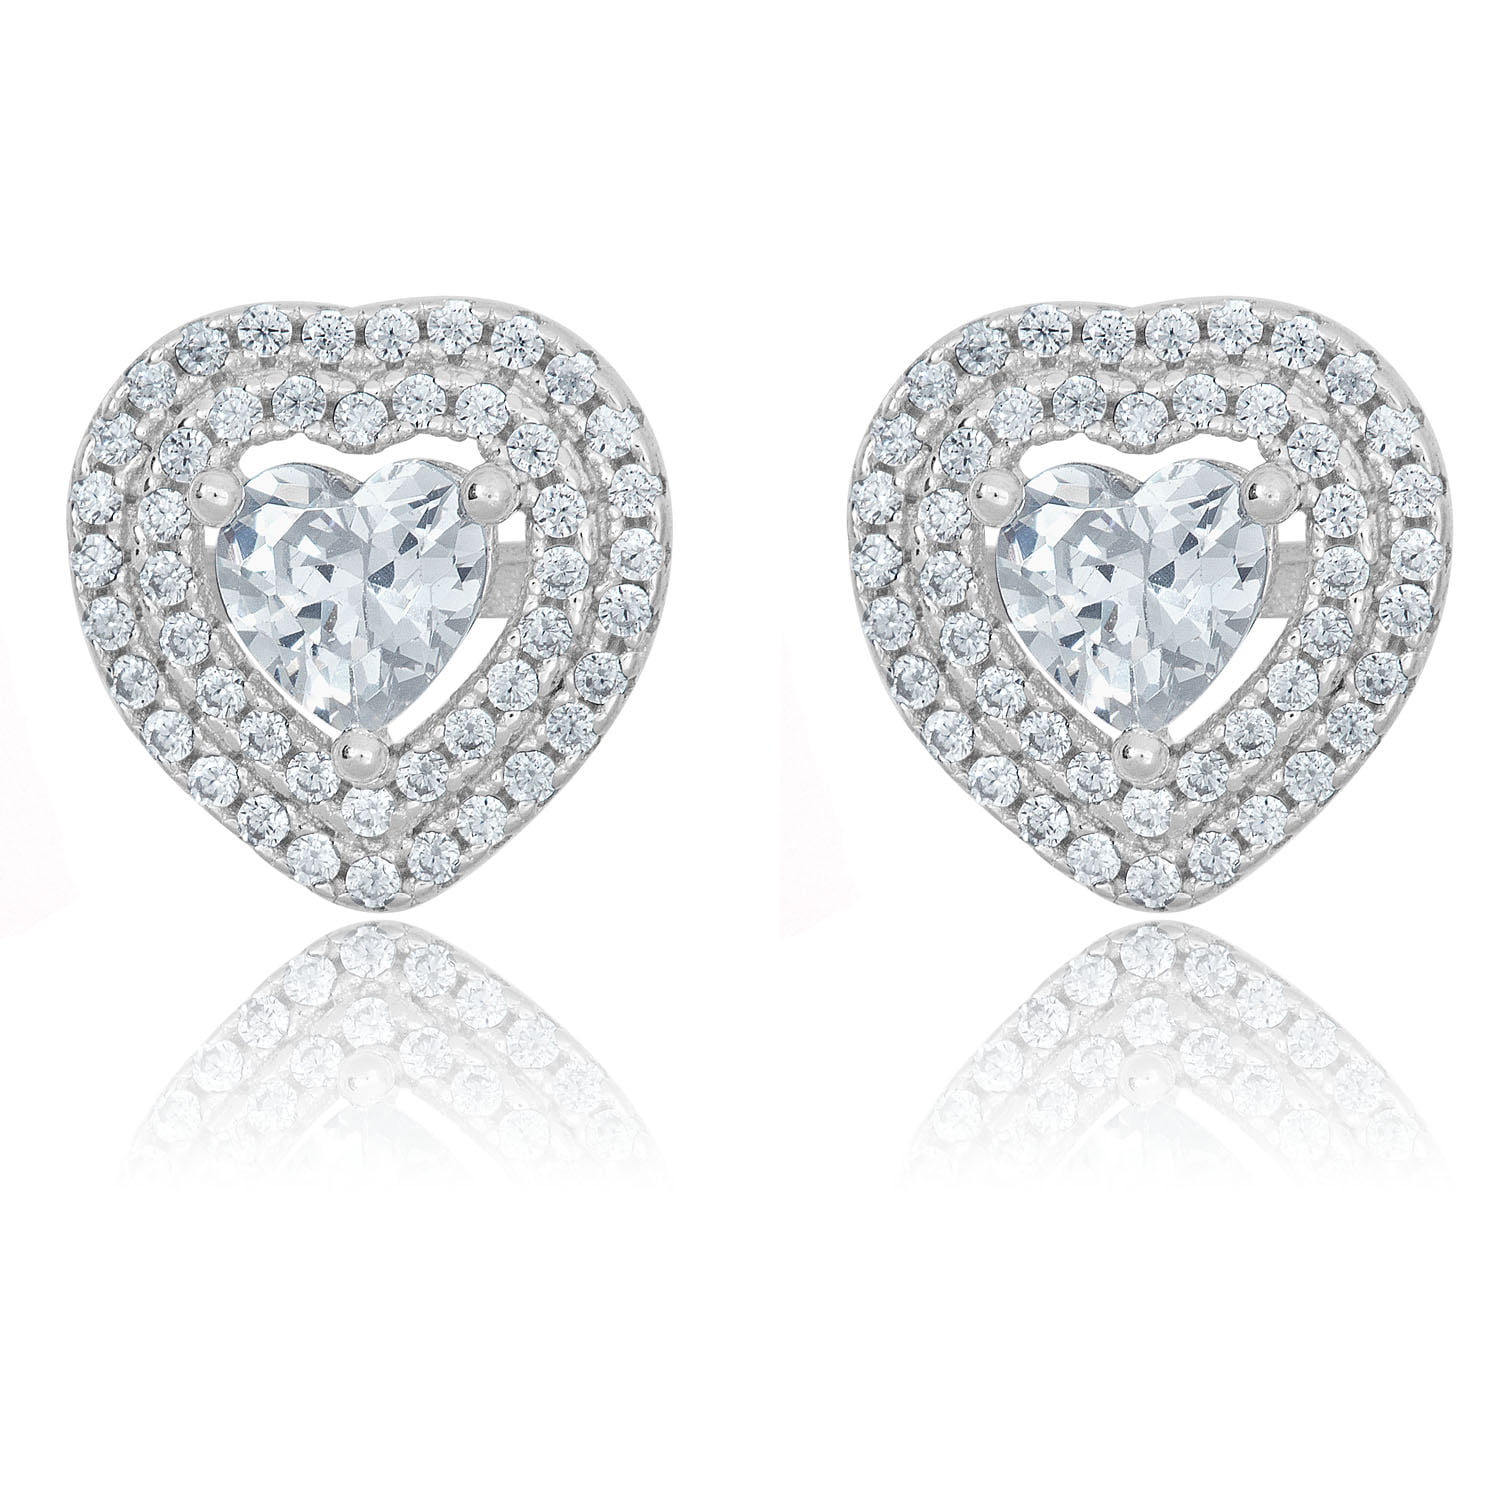 Sterling Silver 925 Heart Shaped CZ Detail Stud Earring Jewellery Gift 